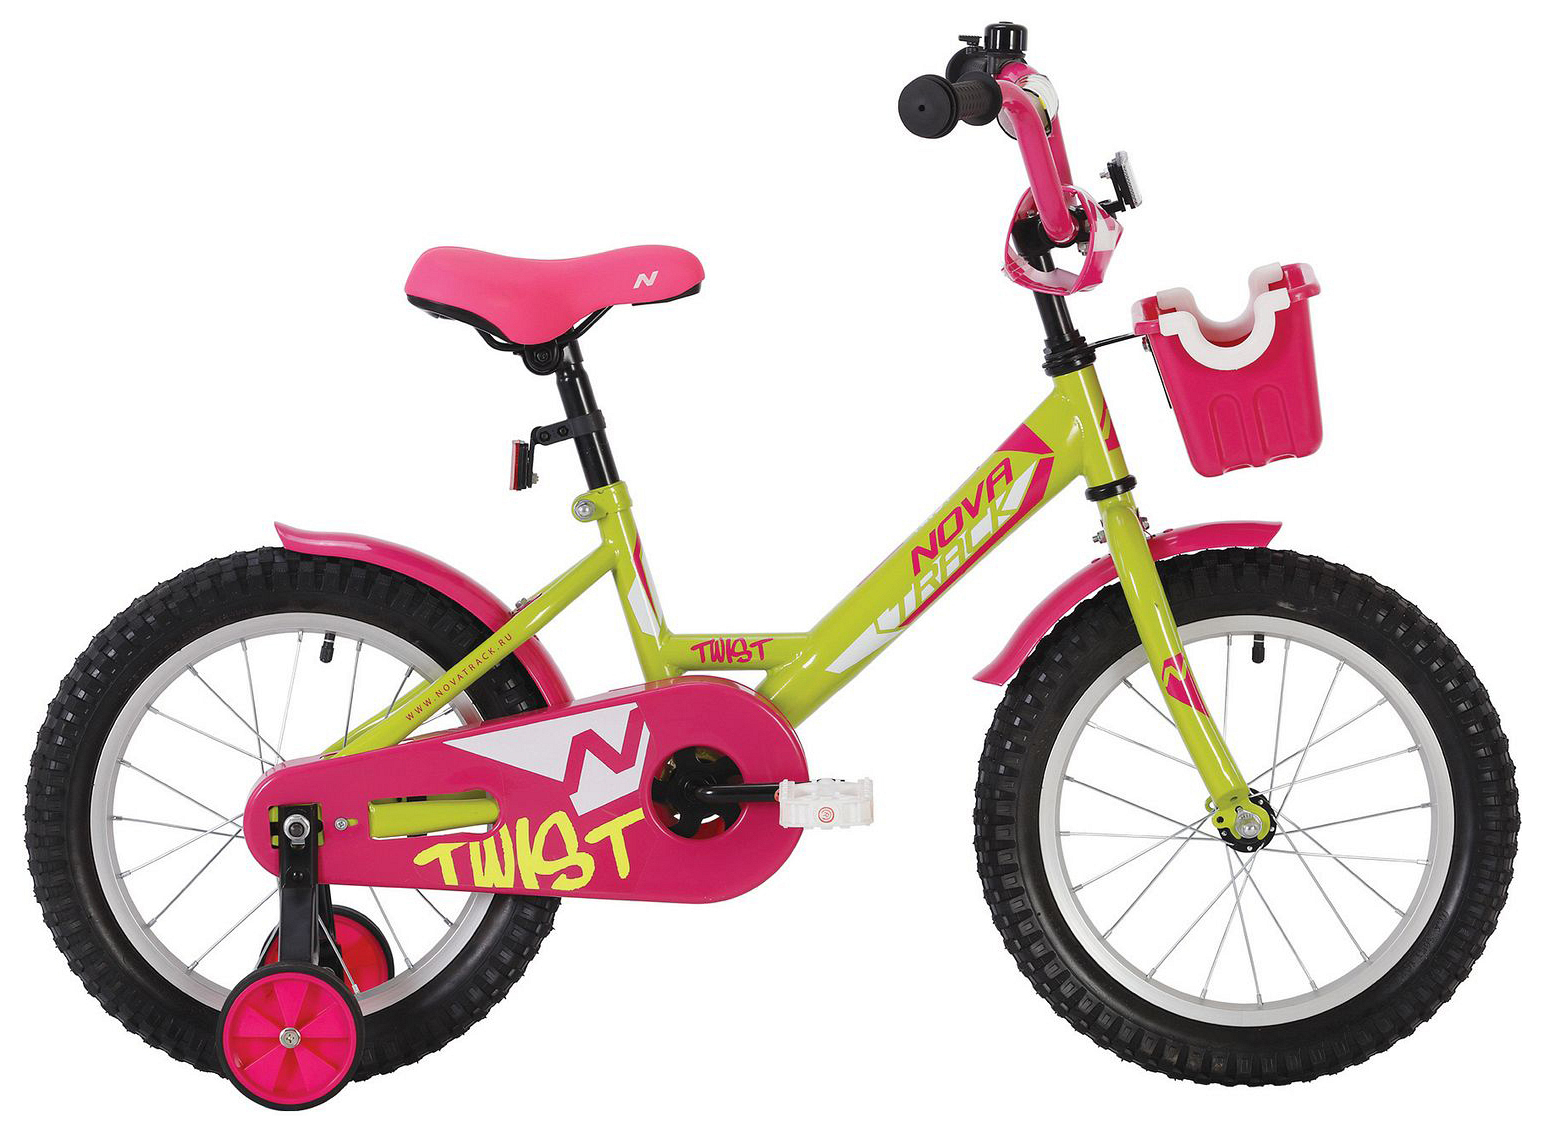  Отзывы о Детском велосипеде Novatrack Twist 18 с корзинкой 2020